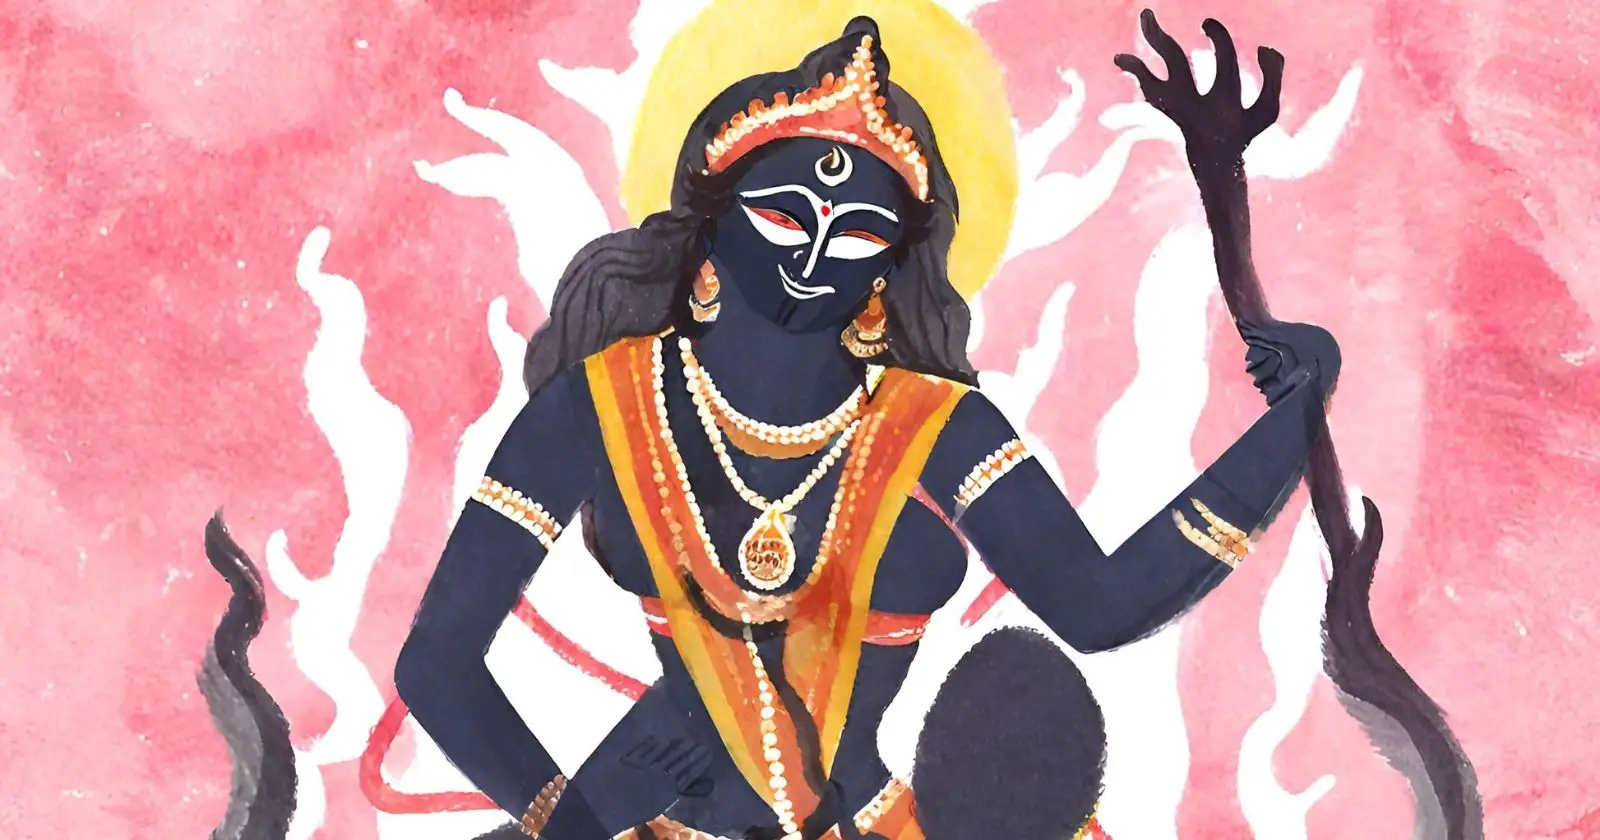 Kali a Deusa Hindu da Destruição